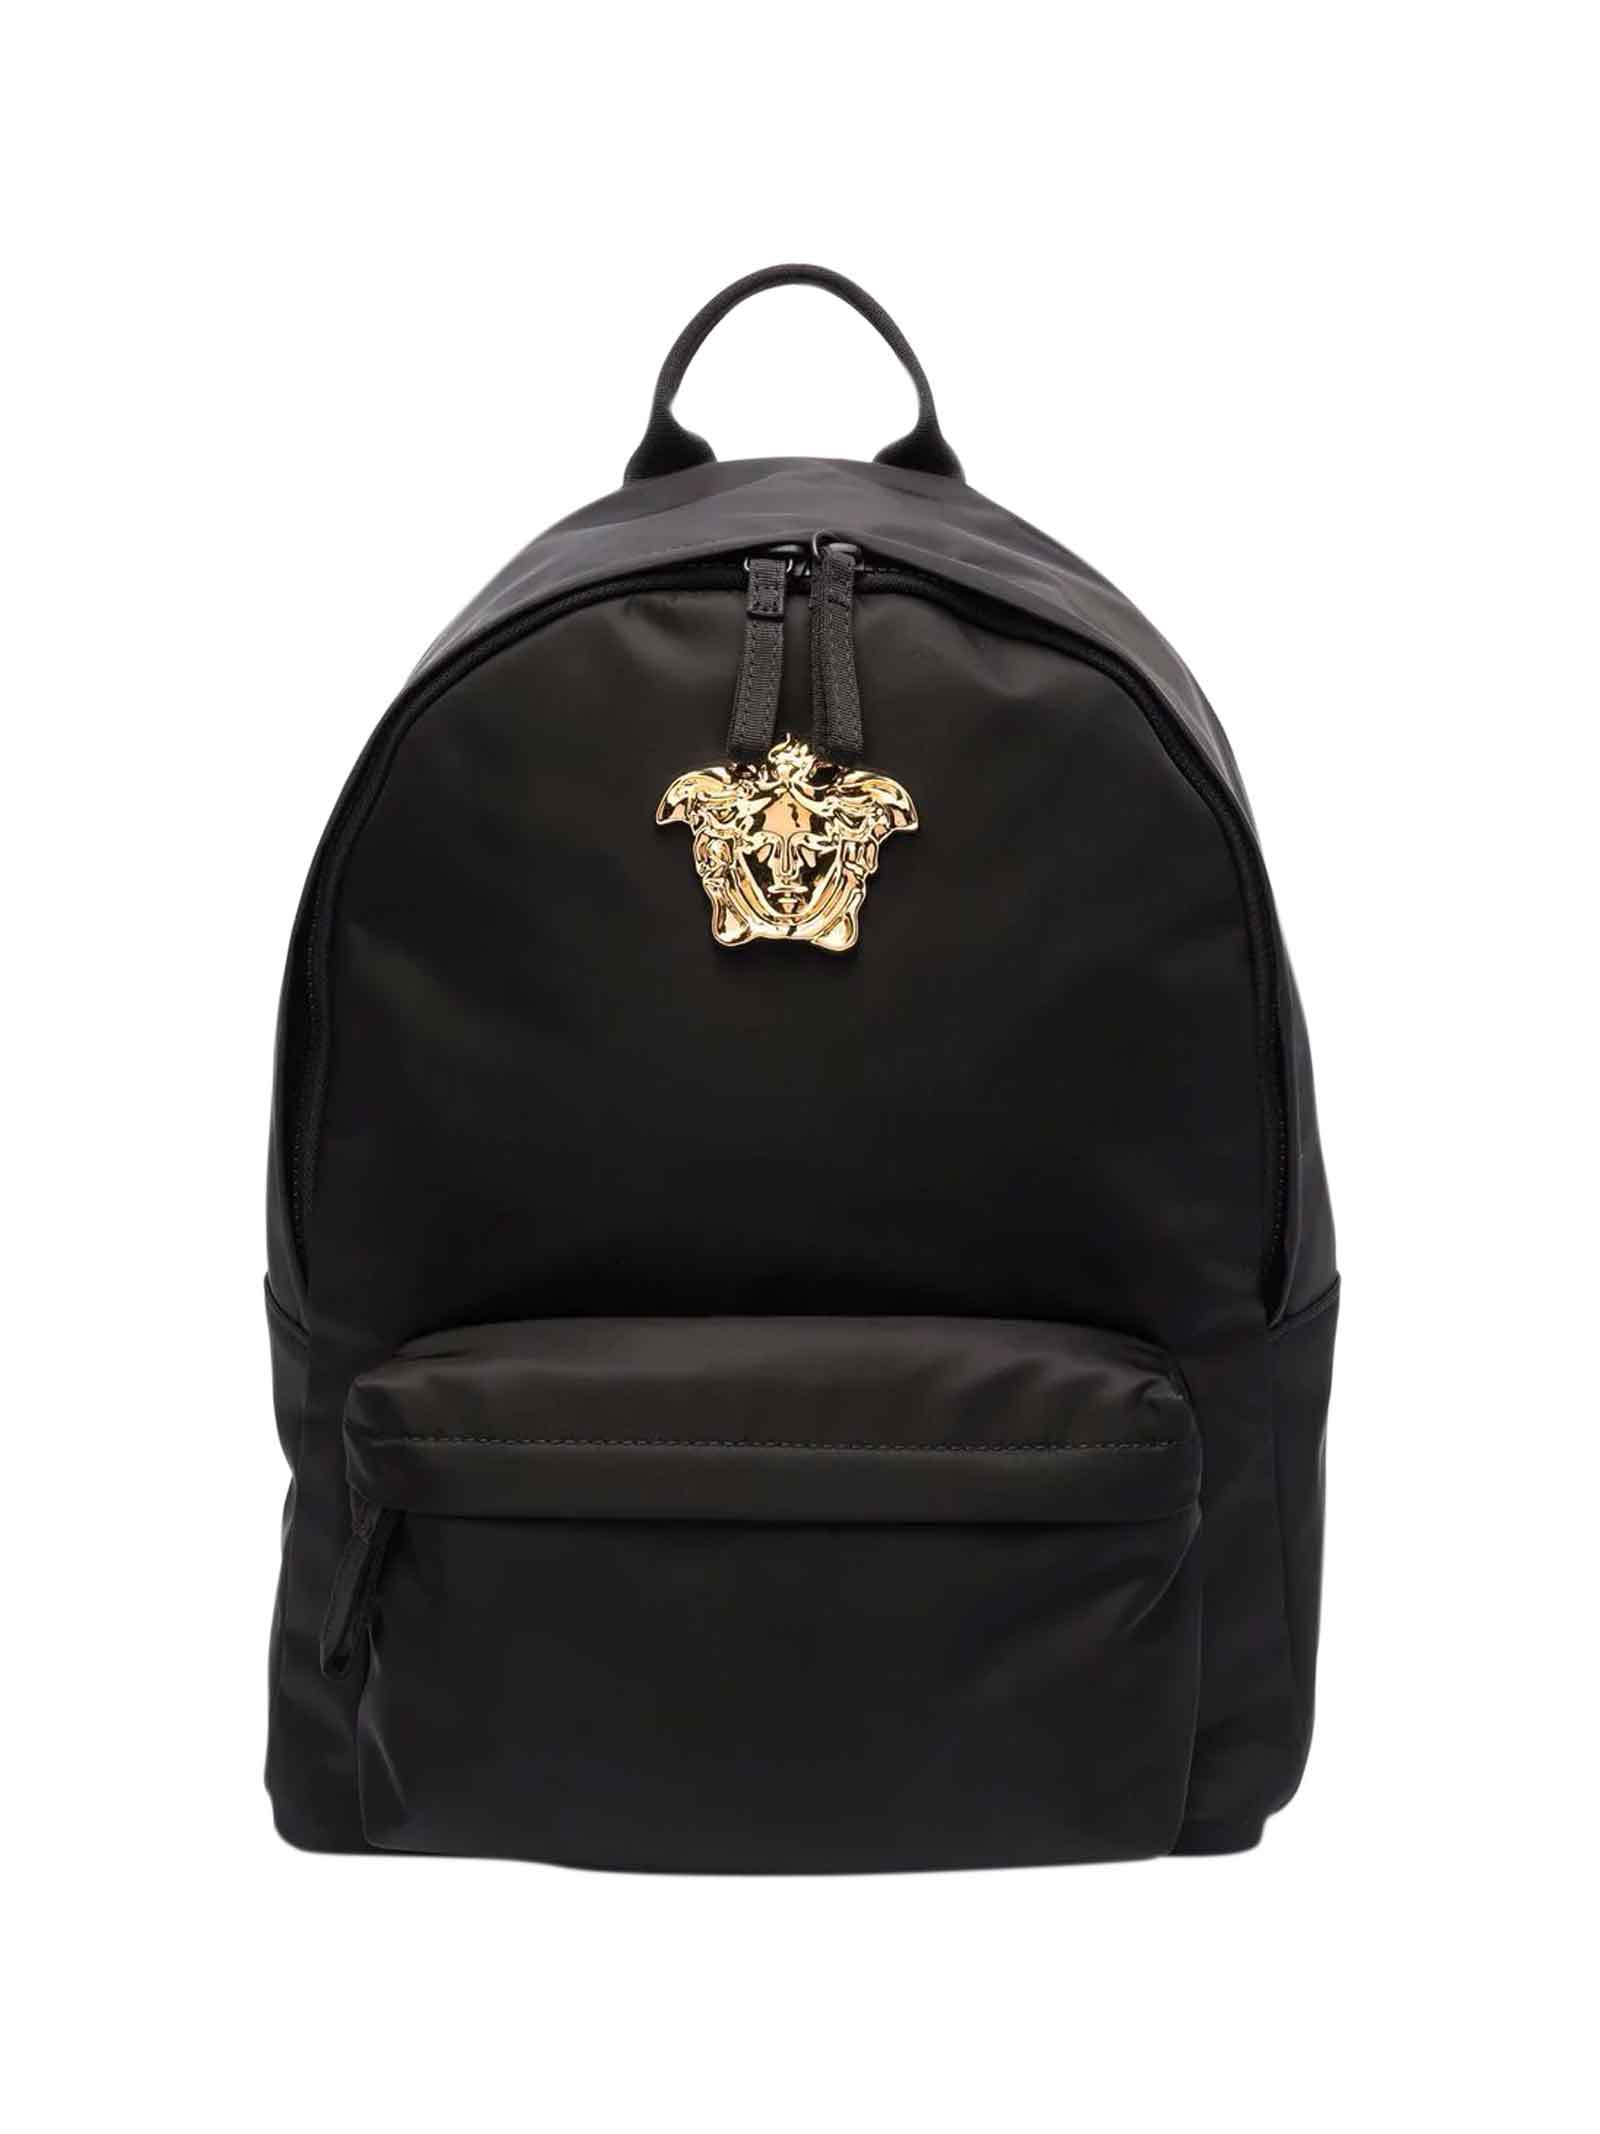 Versace Black Backpack With Medusa Application Kids